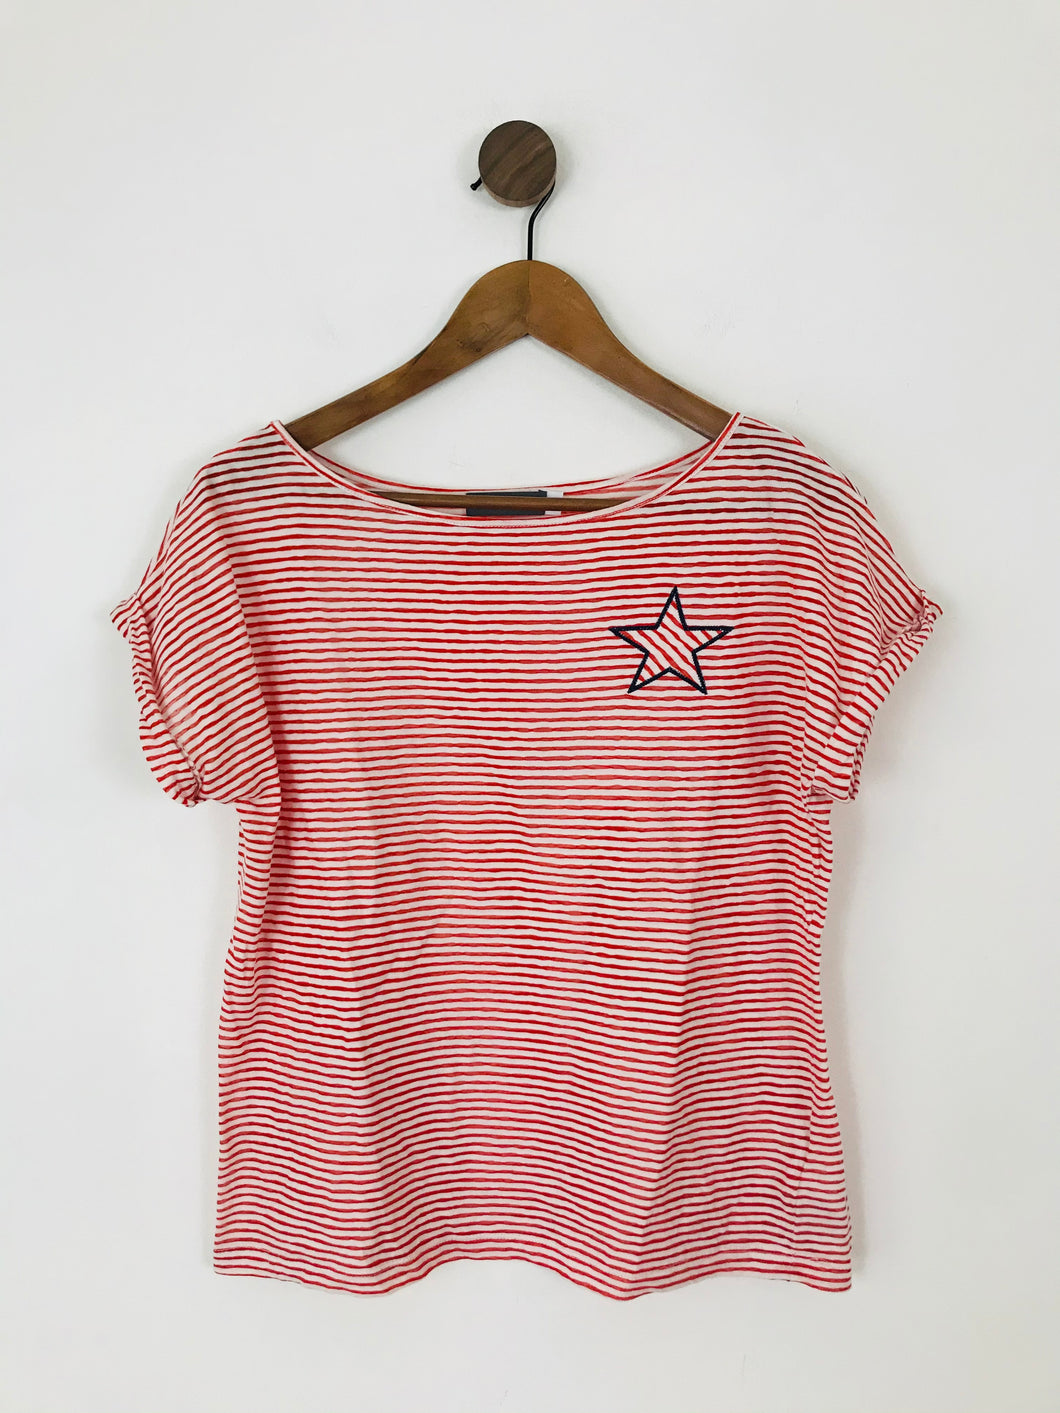 Mint Velvet Women’s Stripe Star T-Shirt | M UK10-12 | Red White